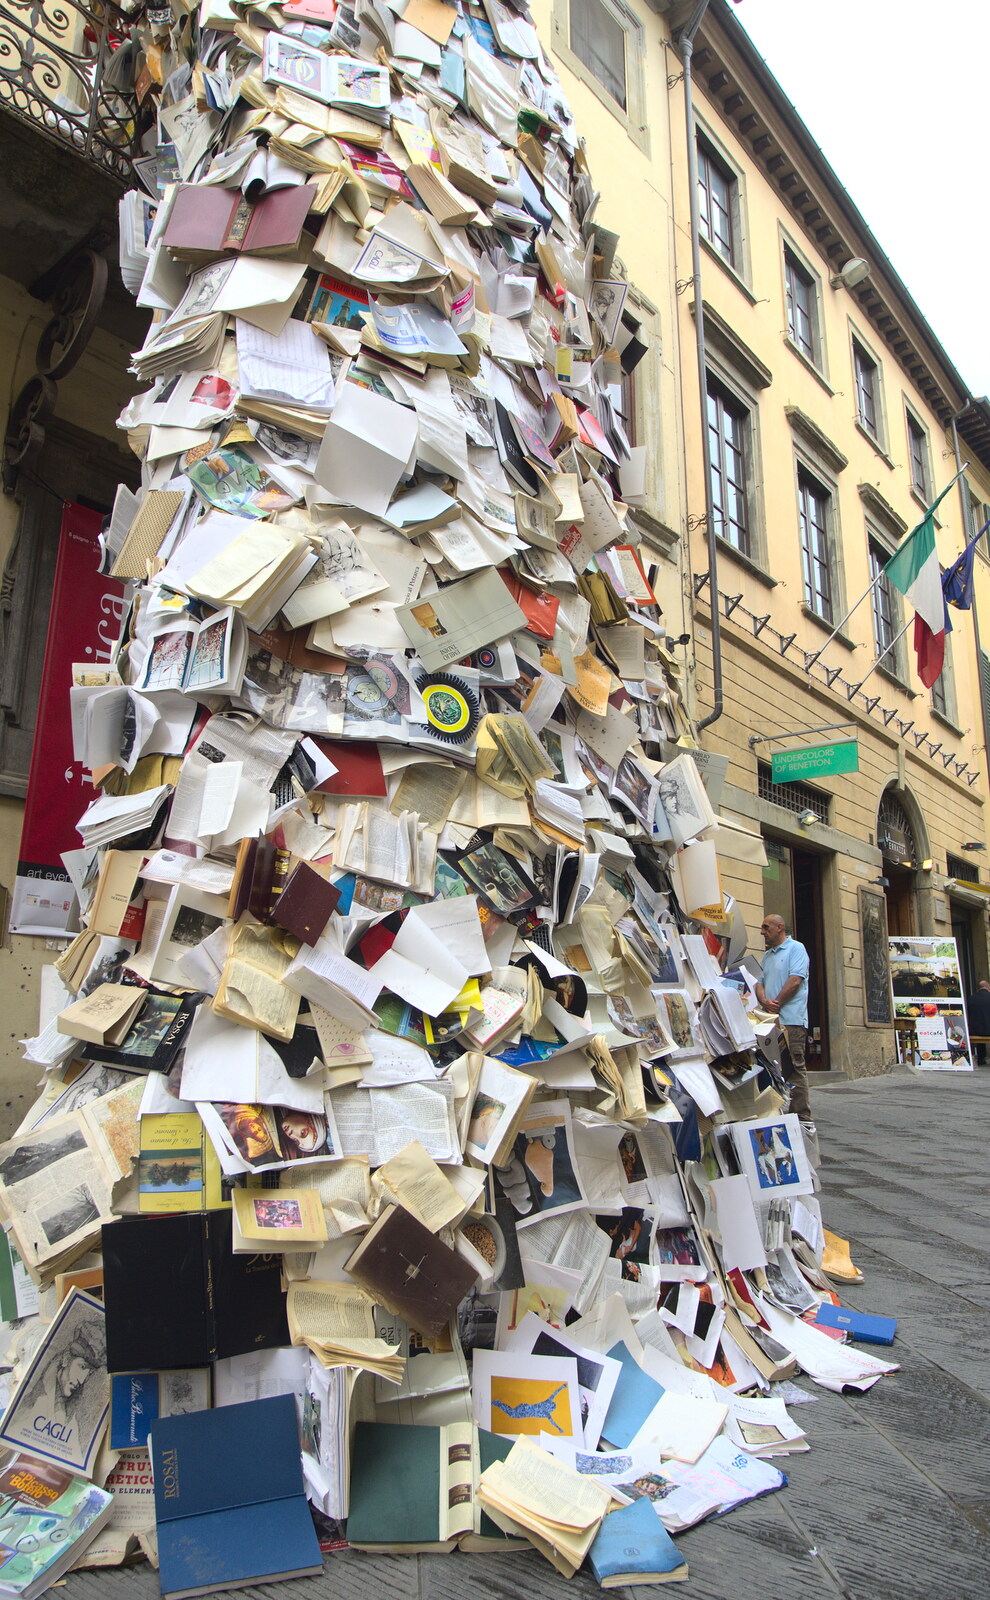 Marconi, Arezzo and the Sagra del Maccherone Festival, Battifolle, Tuscany - 9th June 2013: The pile of books artwork